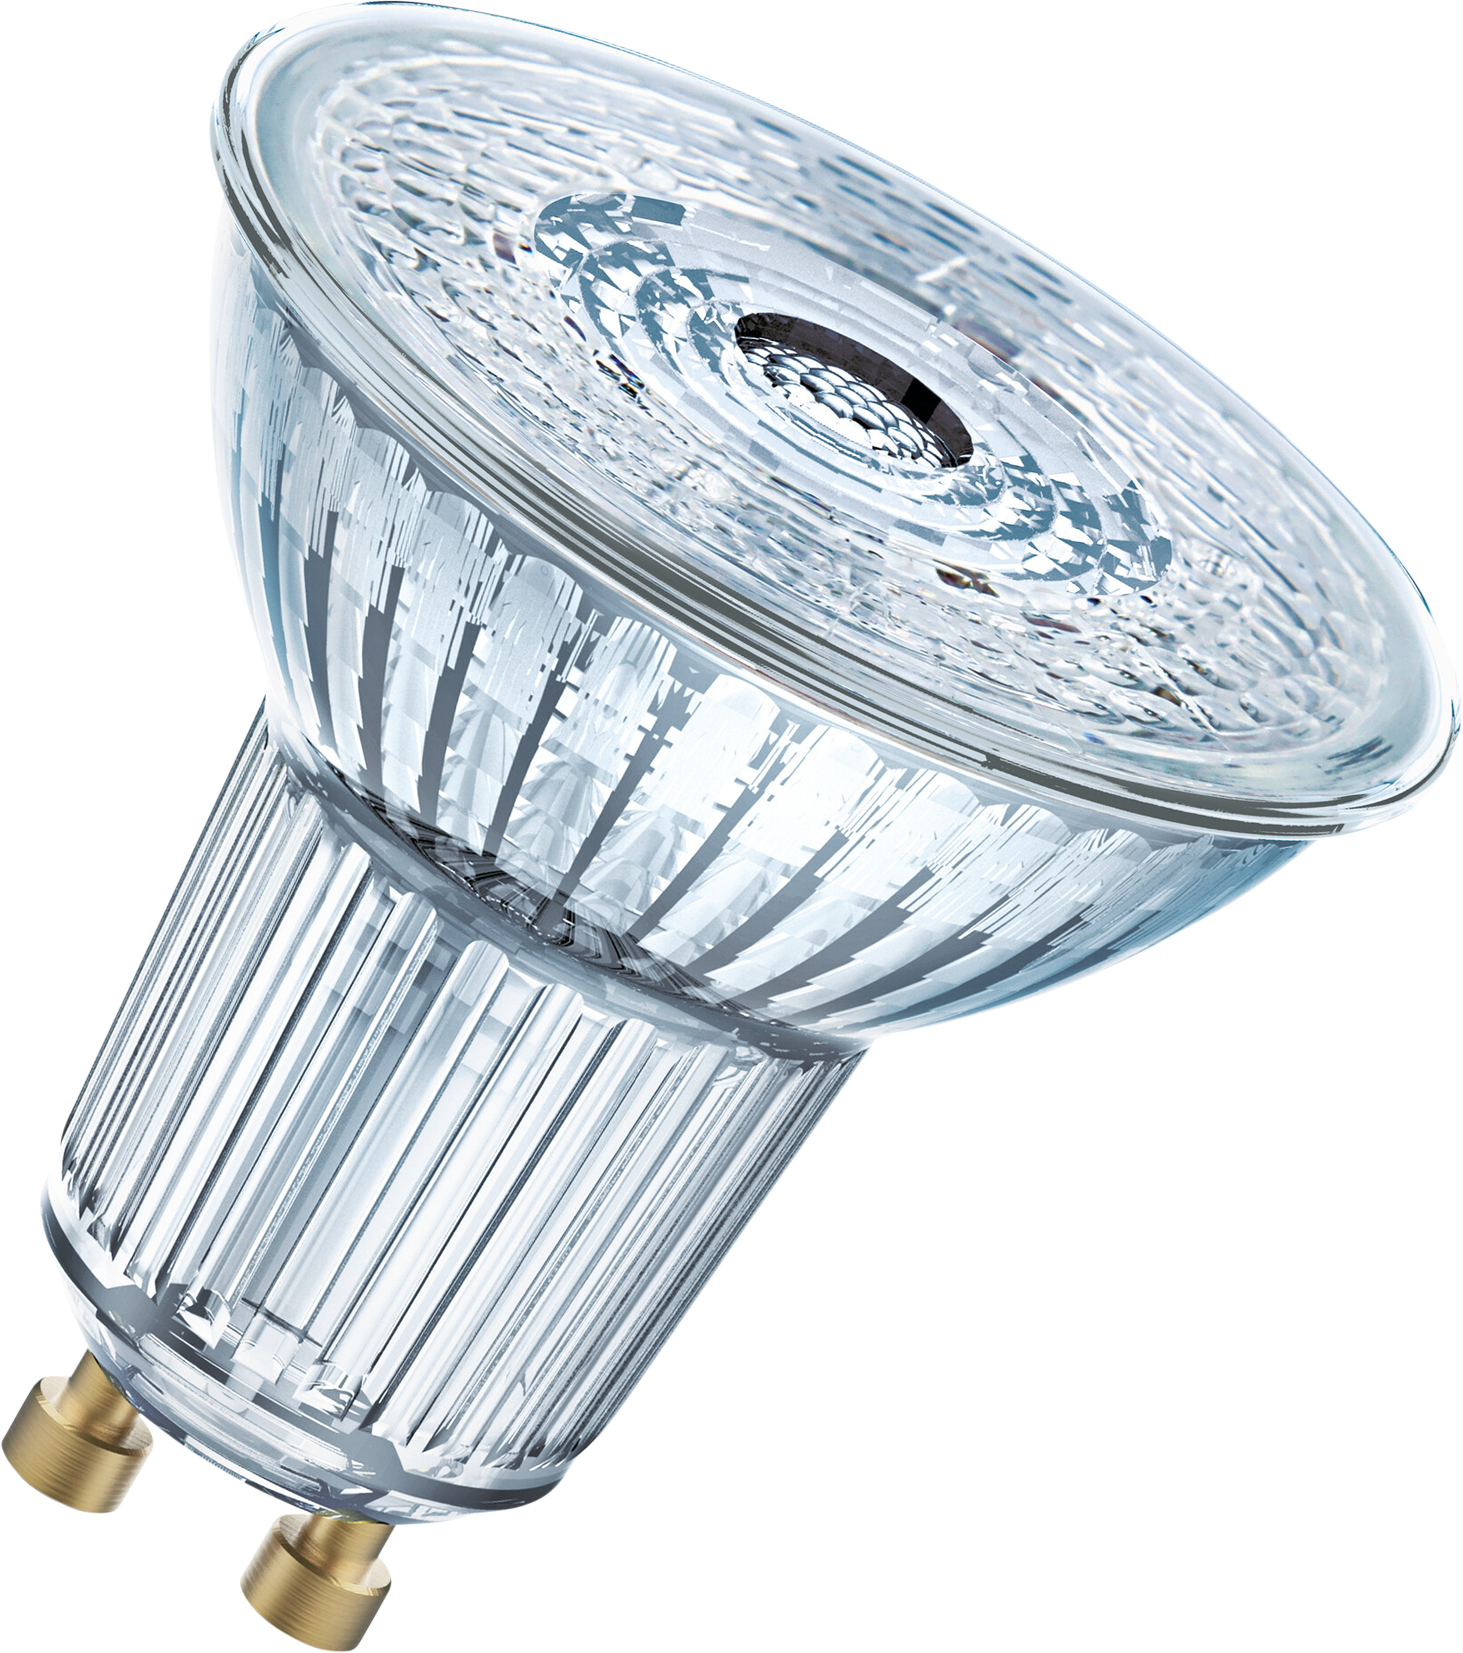 OSRAM LED-Lampe MR16 GU5.3, 3.4W, 230lm, dimmbar, warmweiss - Lampen, Leuchten